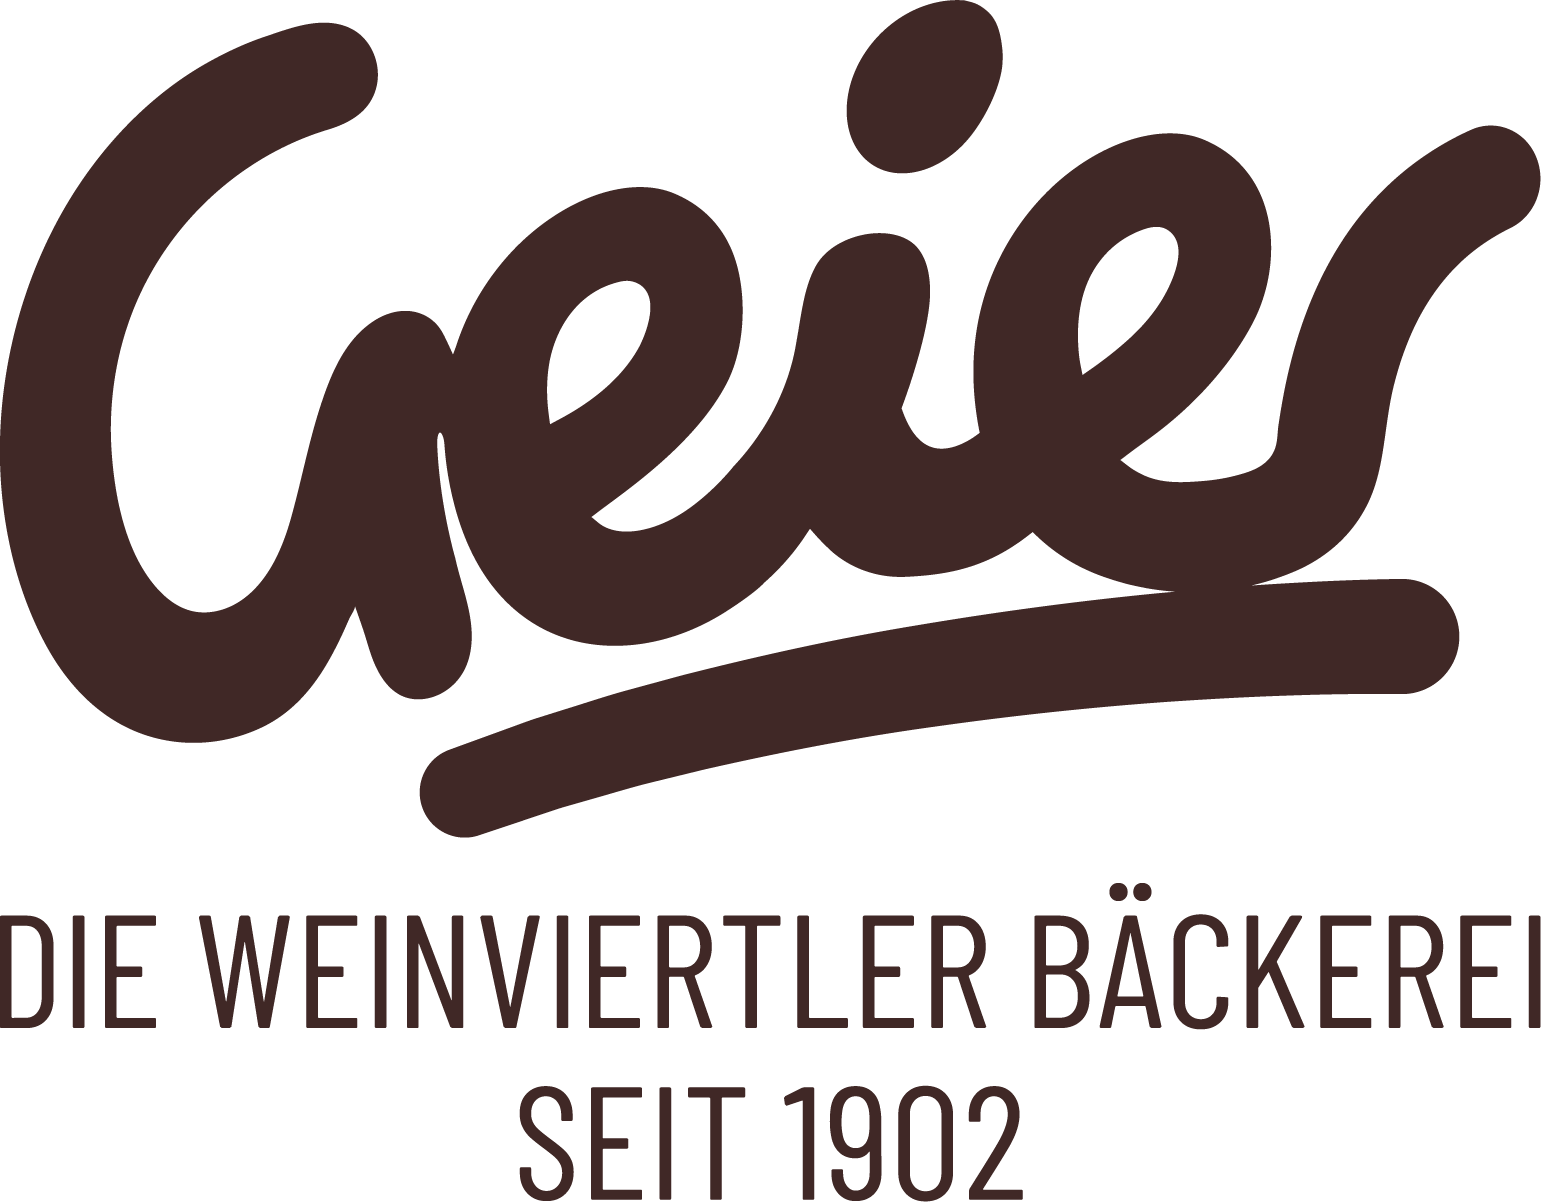 Geier.Die Bäckerei GmbH